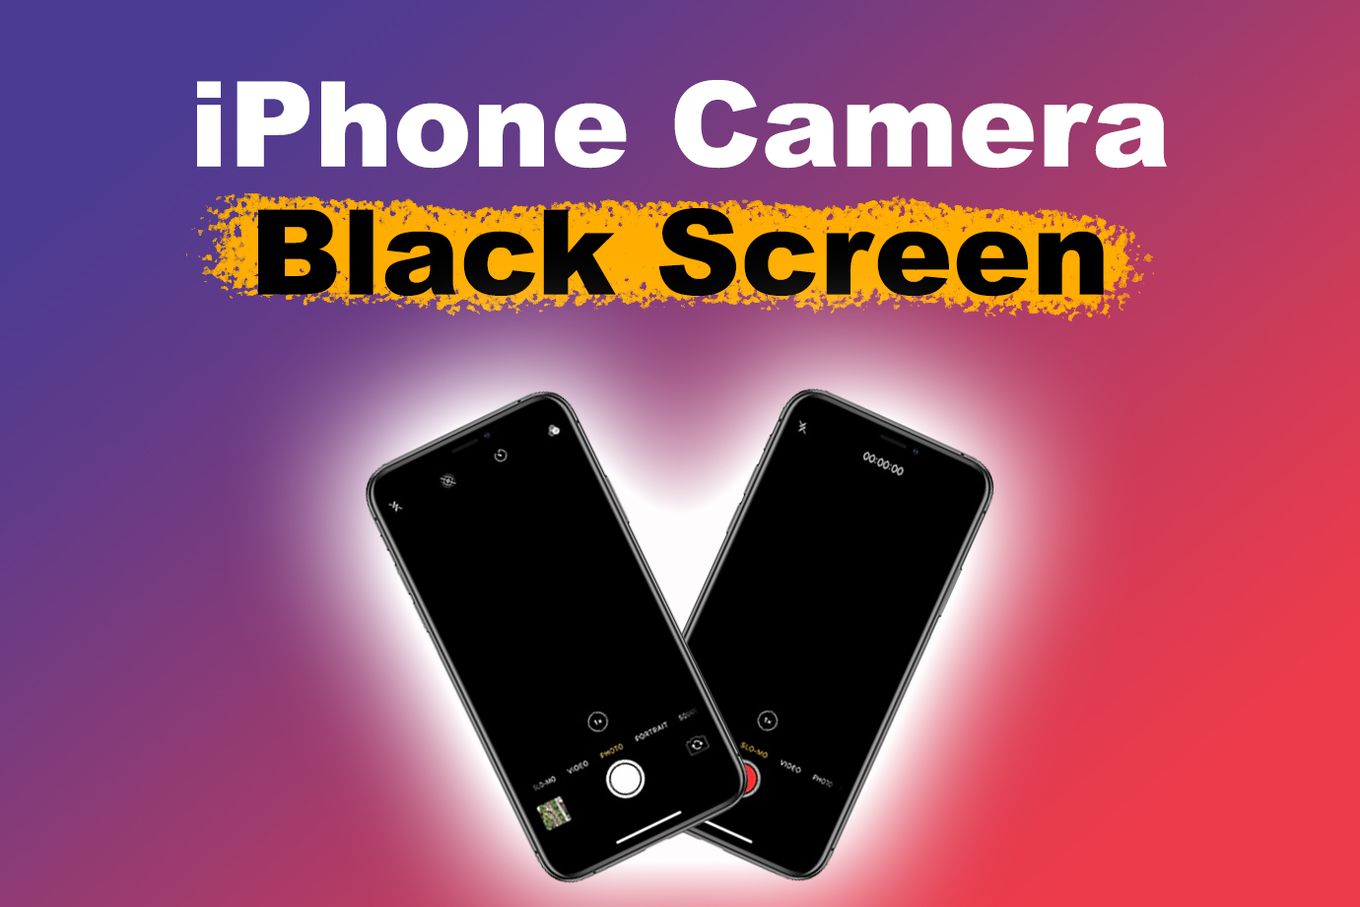 iPhone Camera Black Screen